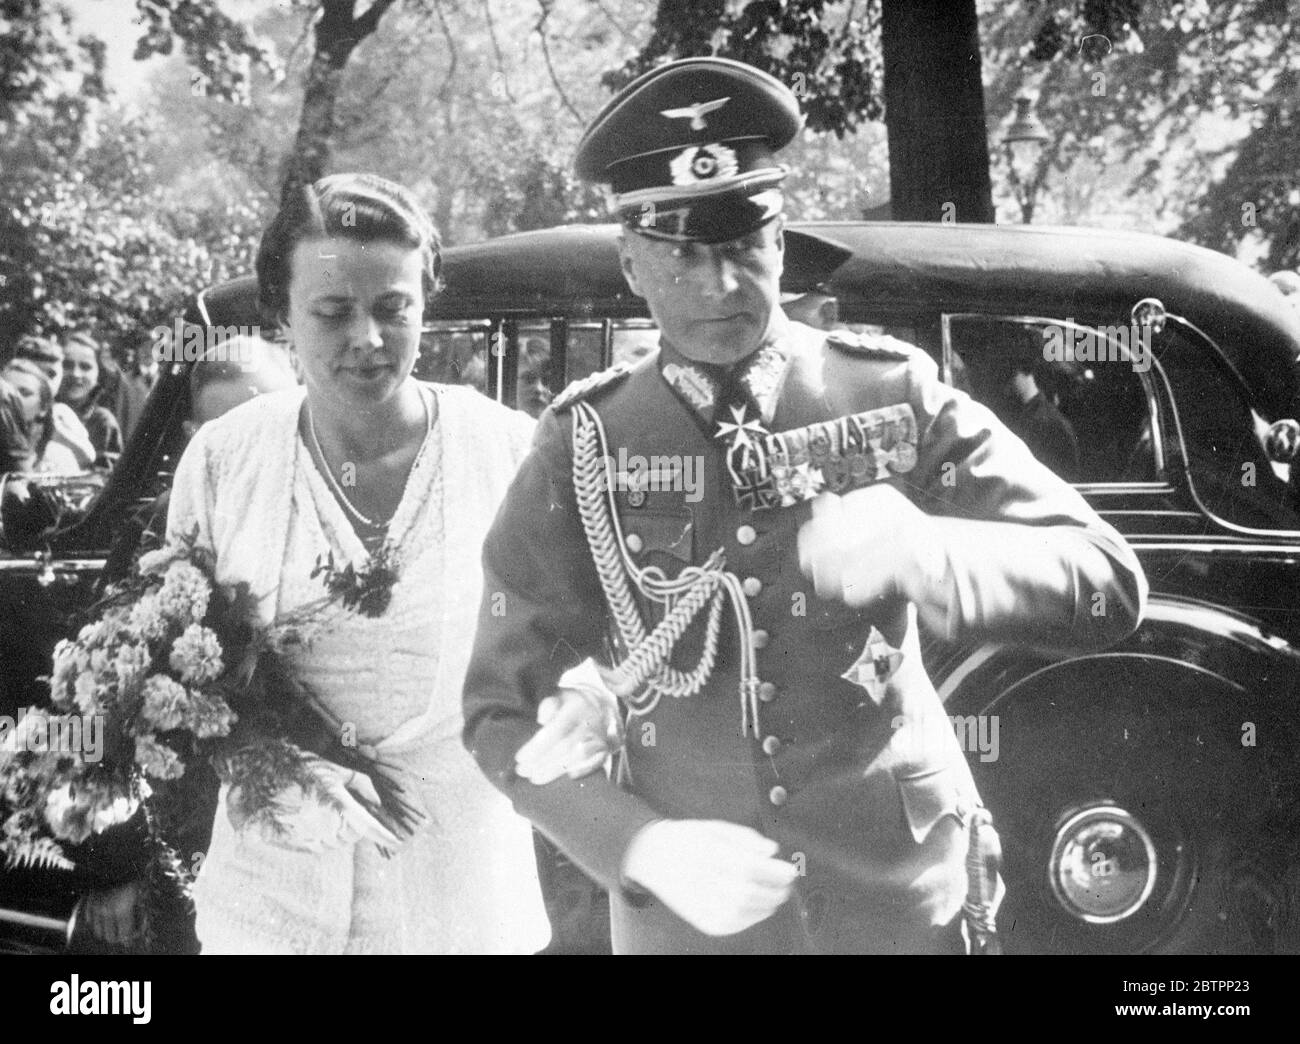 Il comandante in capo della Germania si sposò. Il col generale von Brauchitsch, comandante in capo dell'esercito tedesco, si sposò nella Chiesa evangelica di Bad Salzbrunn, in Slesia. Spettacoli fotografici, col Gen von Brauchitsch con la sua sposa dopo la cerimonia nuziale. 25 settembre 1938 Foto Stock